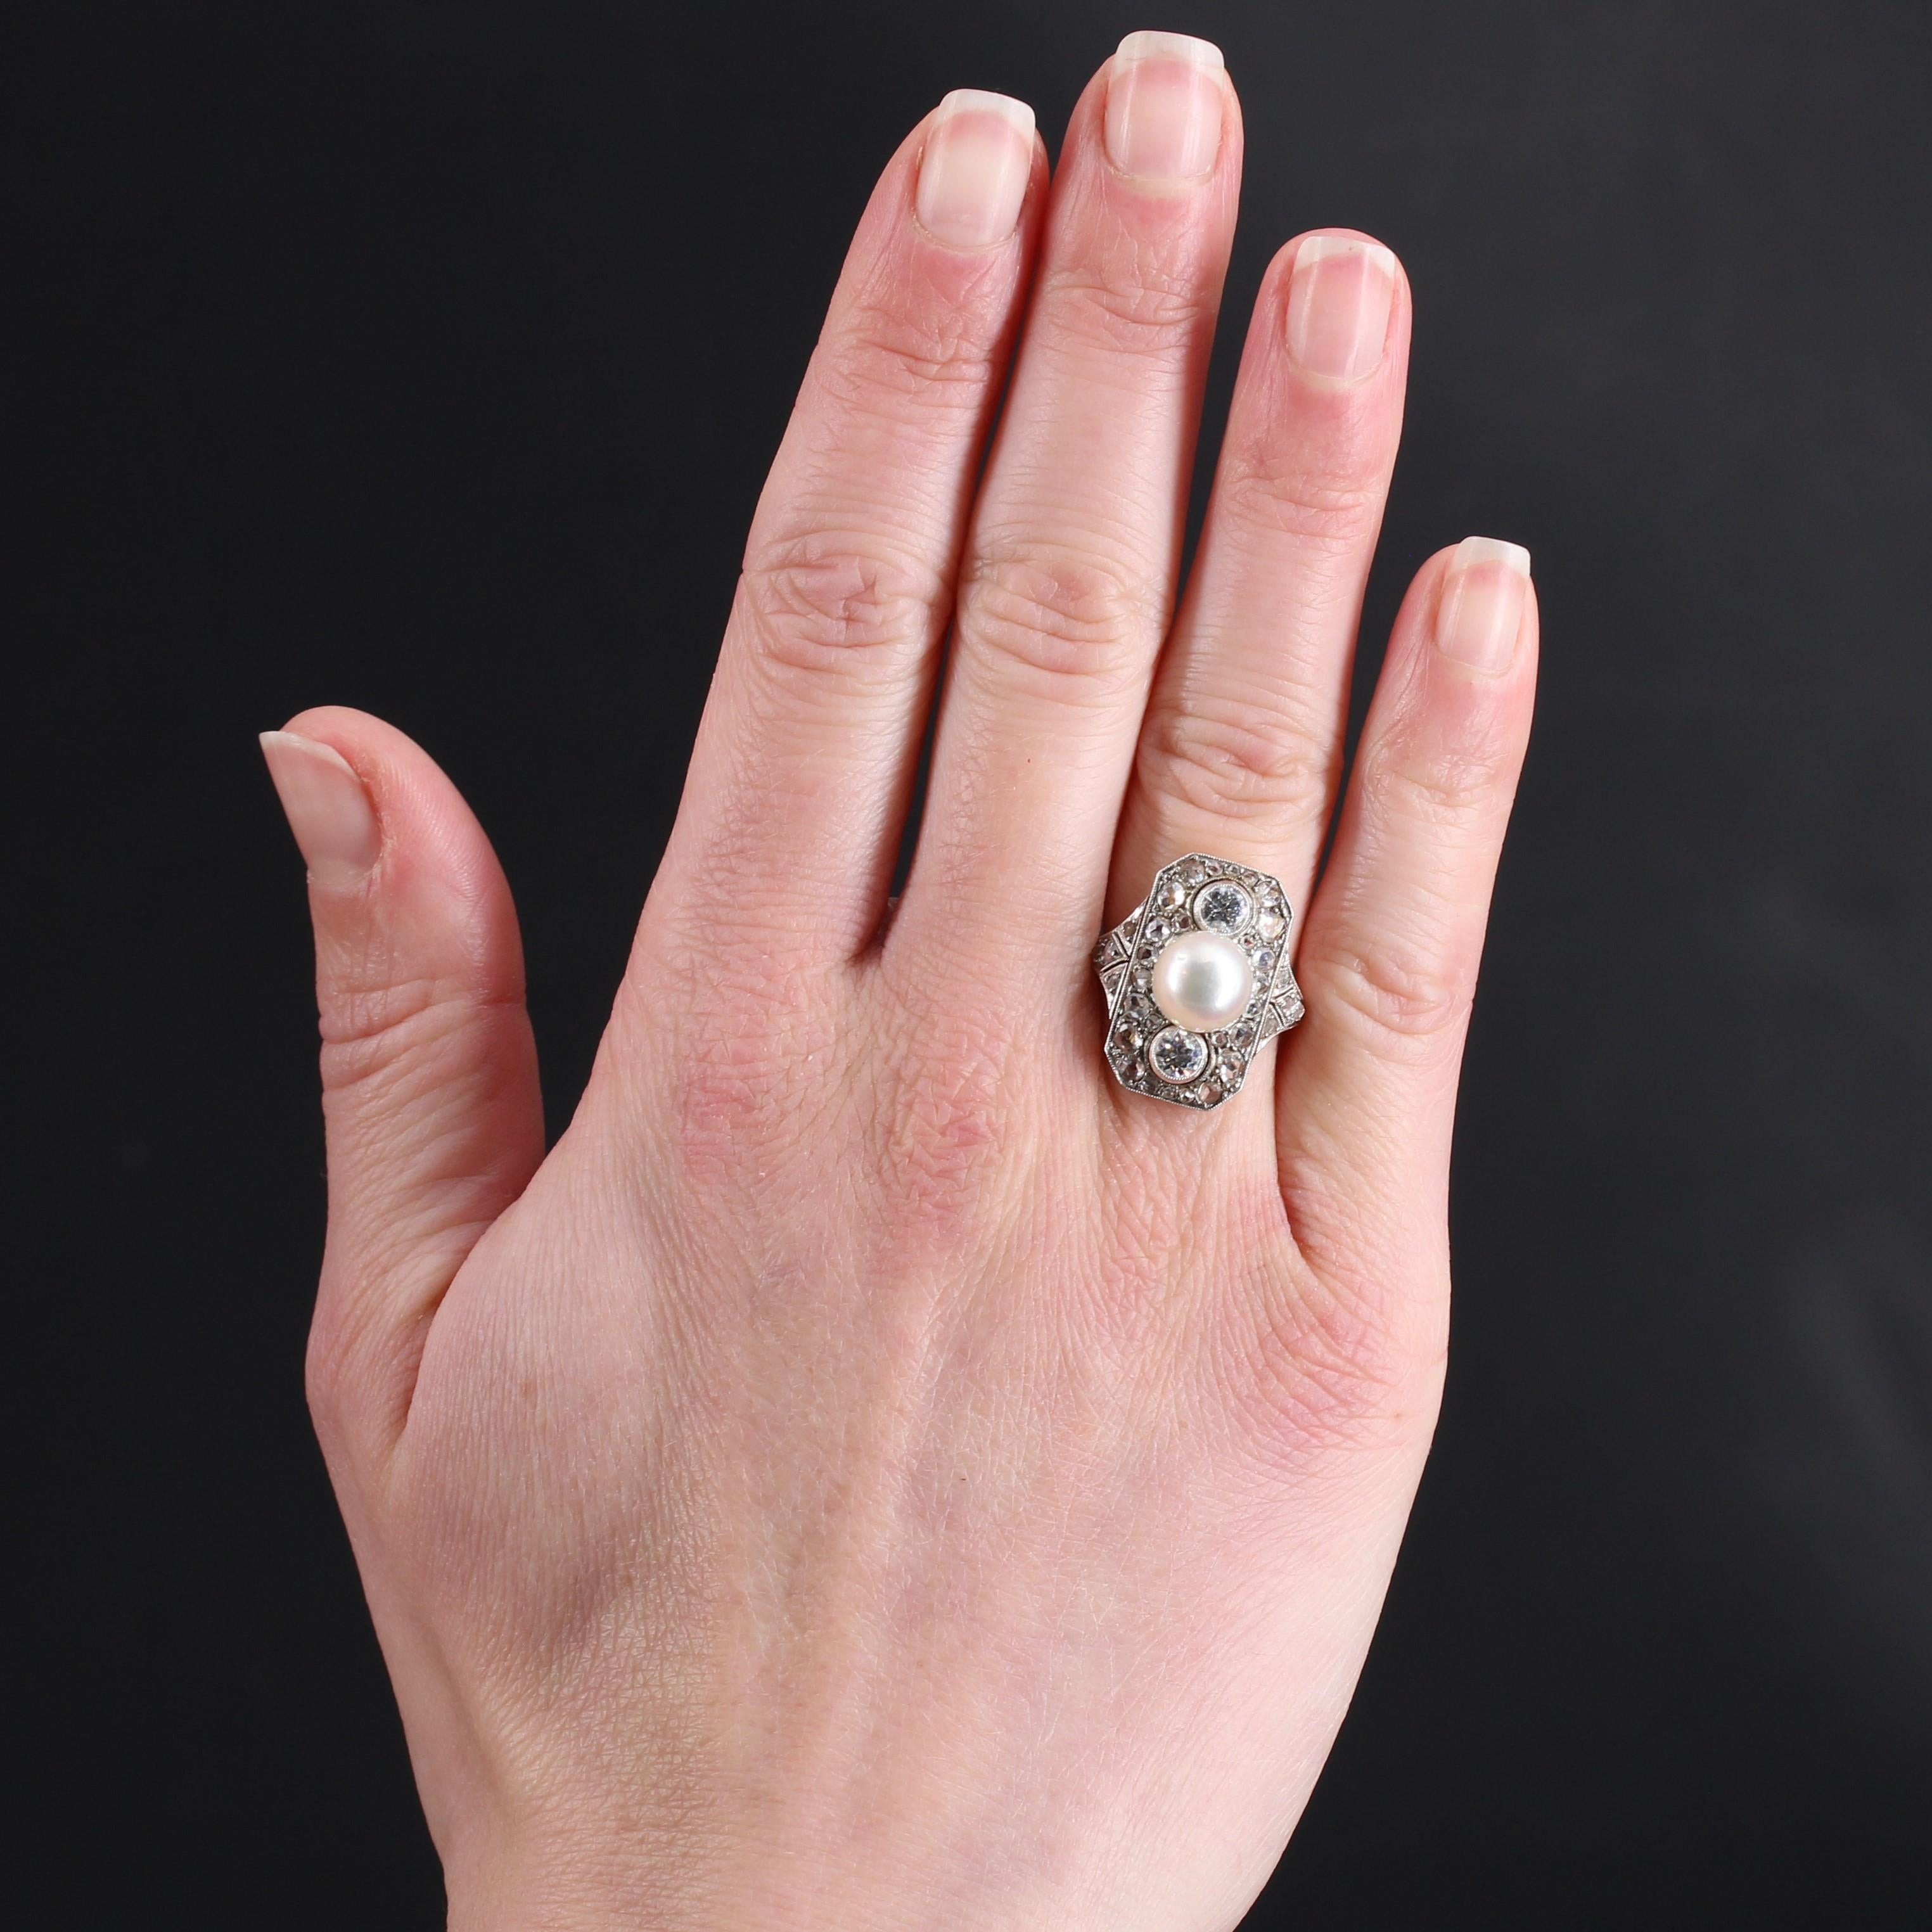 Ring aus 18 Karat Gelbgold und Platin, eigene und groteske Punzierungen.
Sublime Art Deco Ring, präsentiert es eine rechteckige Fassung mit geschliffenen Seiten mit Rose- geschliffenen Diamanten in verschiedenen Größen, von 2 antiken Brillanten